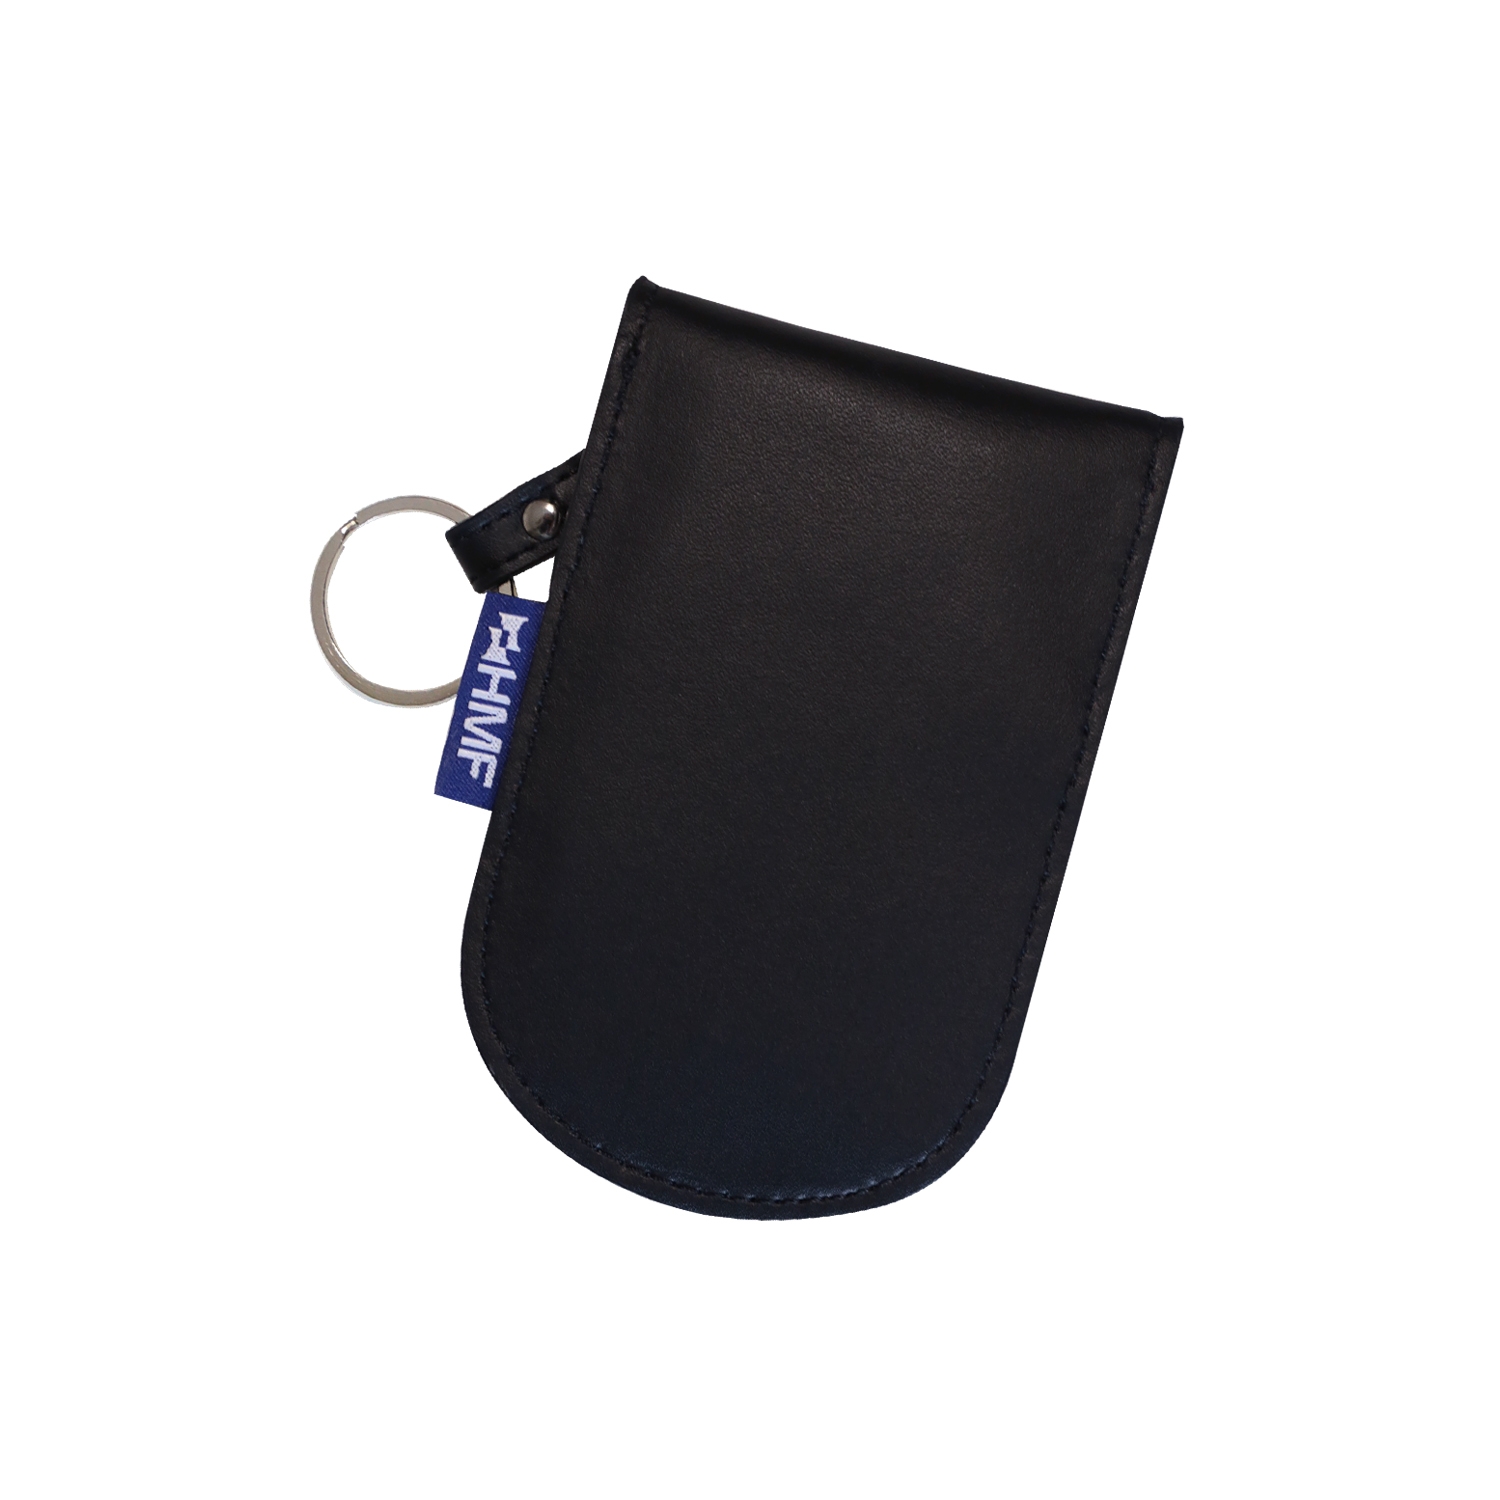 RFID Schutztasche für Autoschlüssel zur Abschirmung von Keyless-Go von HMF mit den Maßen 13 x 8.5 x 1.2 cm